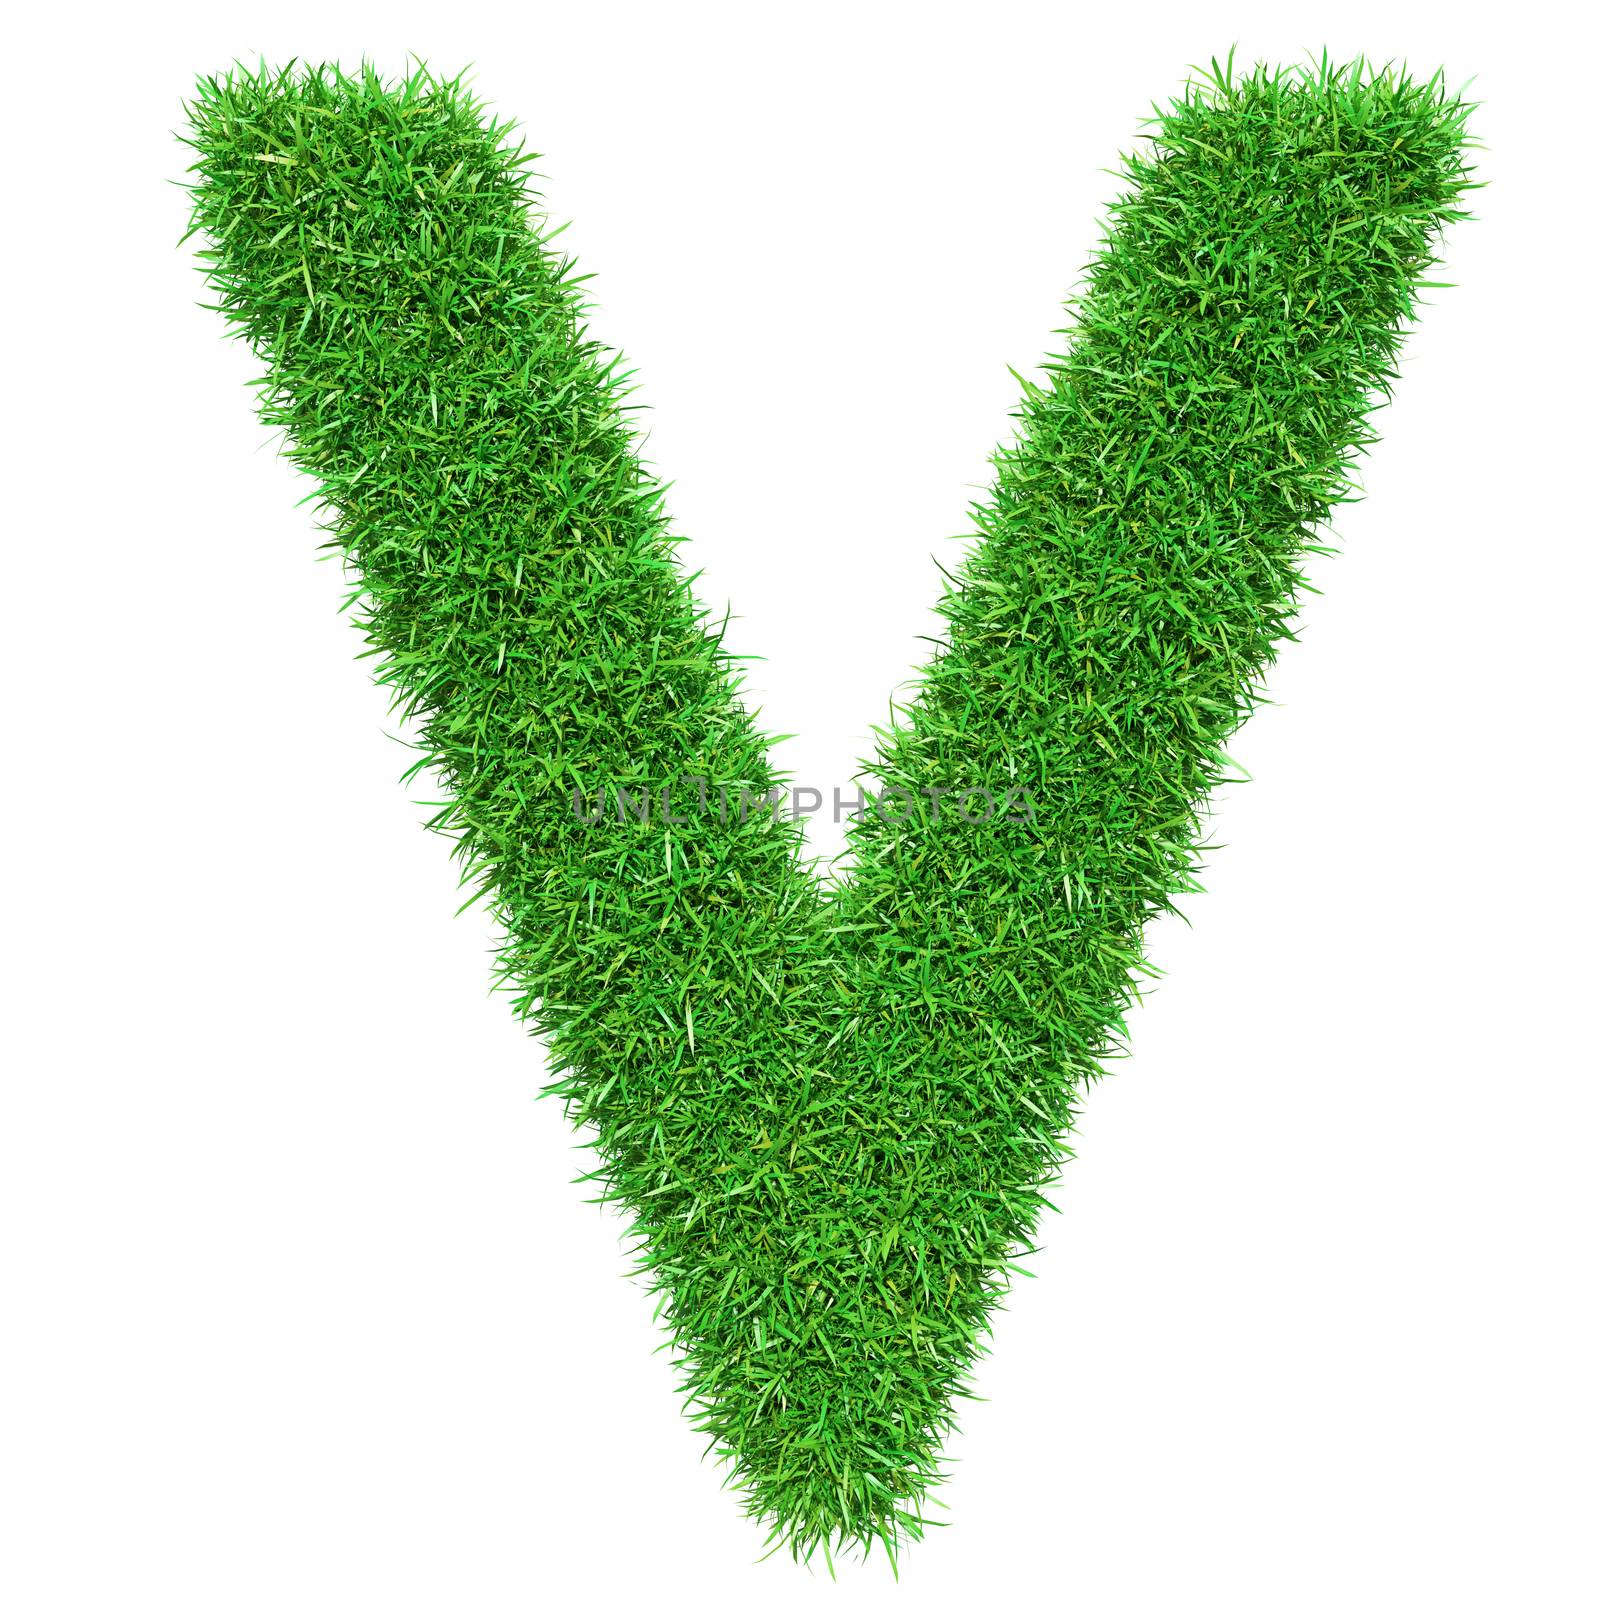 Green Grass Letter V. Isolated On White Background. Font For Your Design. 3D Illustration